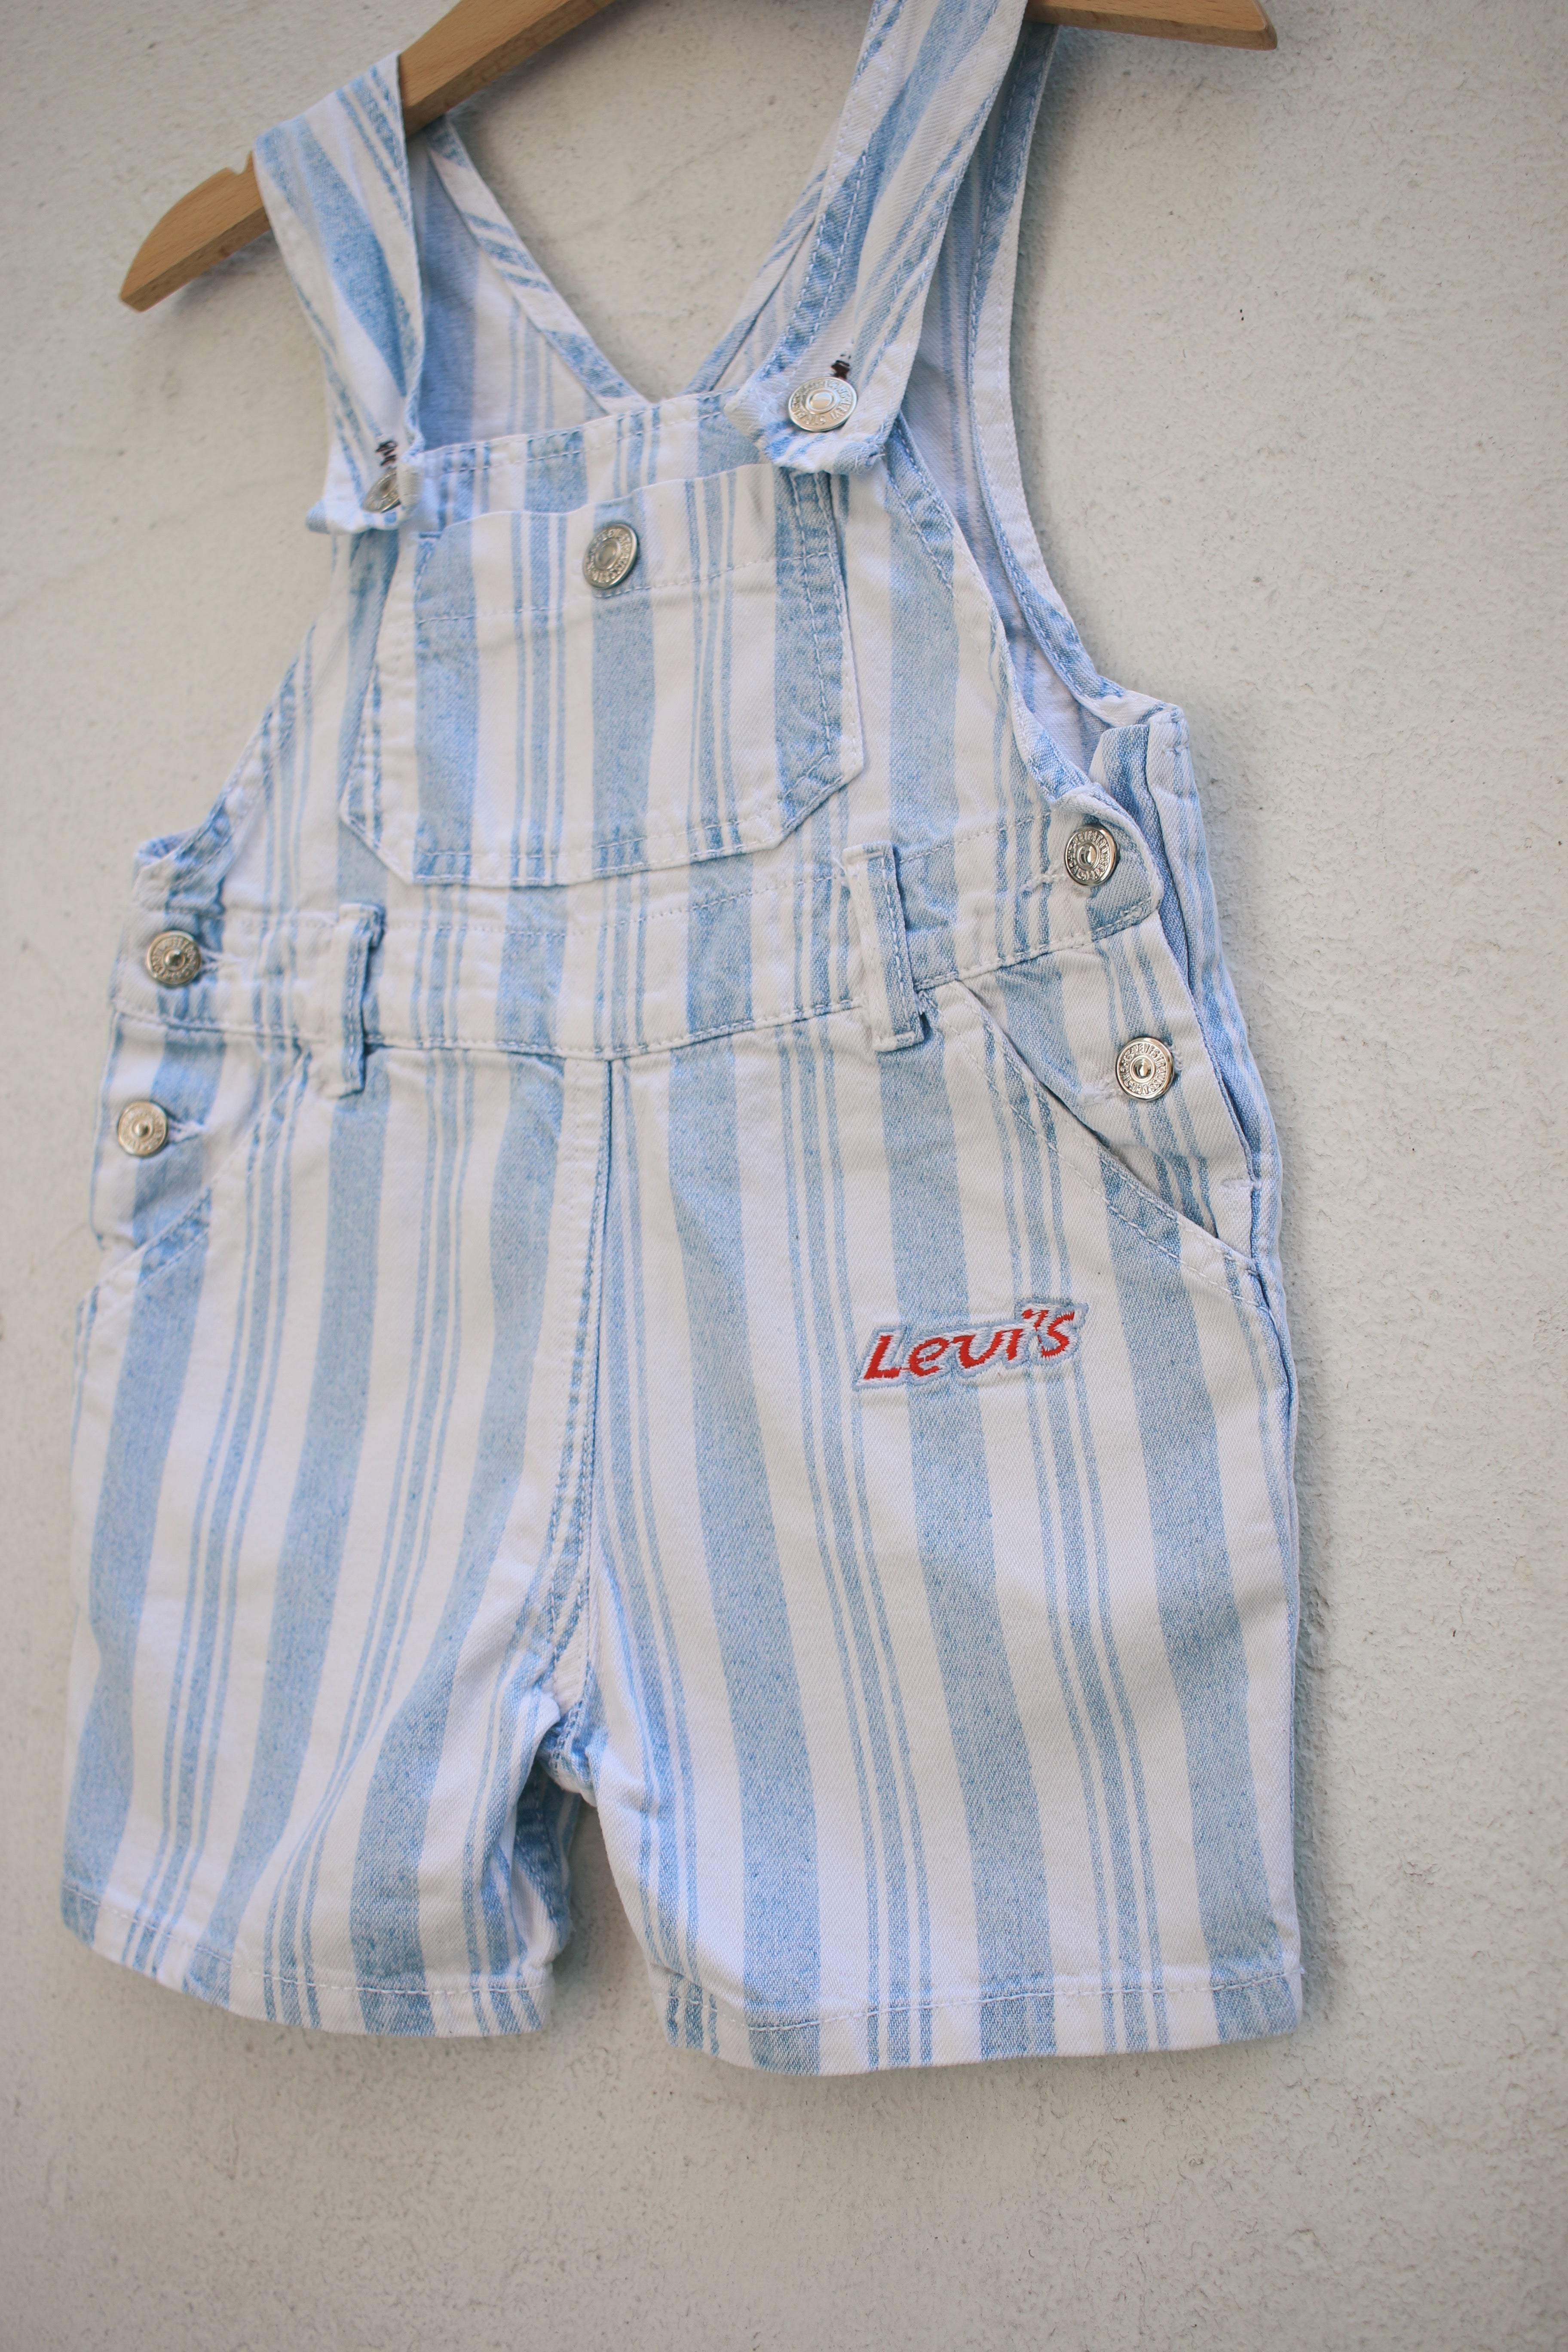 Vintage Levi's striped shortalls - size 6-12 months